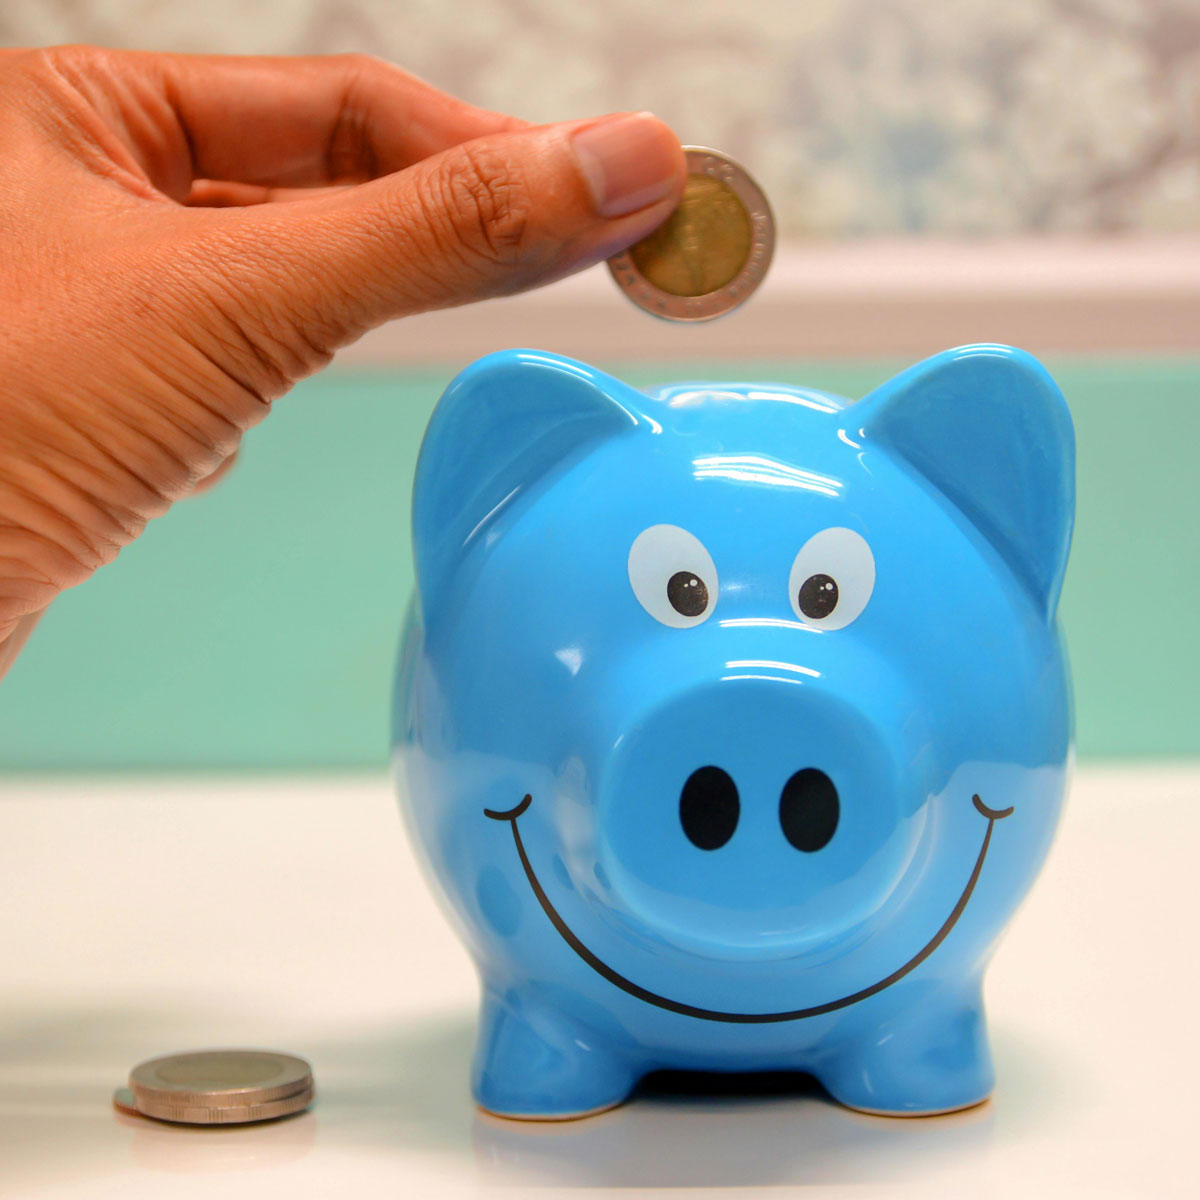 מחשב נייד זול - תמונה של יד משלשלת מטבע לקופת חיסכון כחולה בצורת חזיר